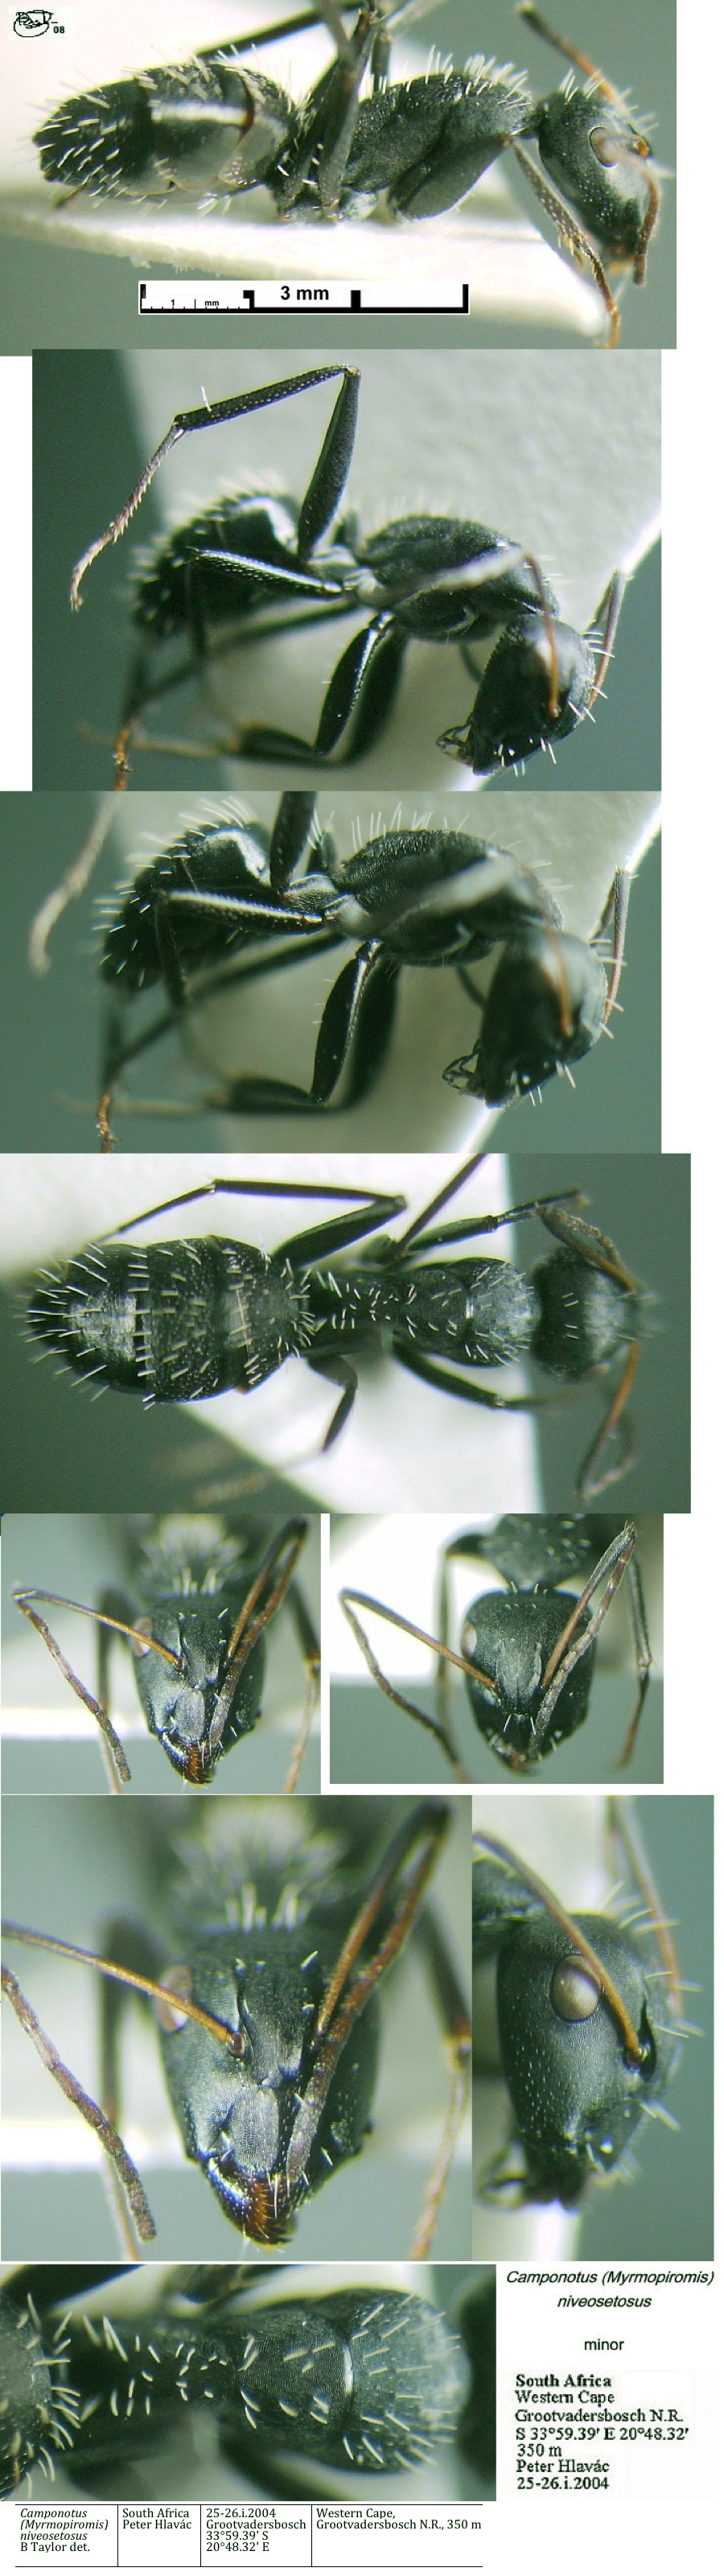 {Camponotus (Myrmipiromis) niveosetosus